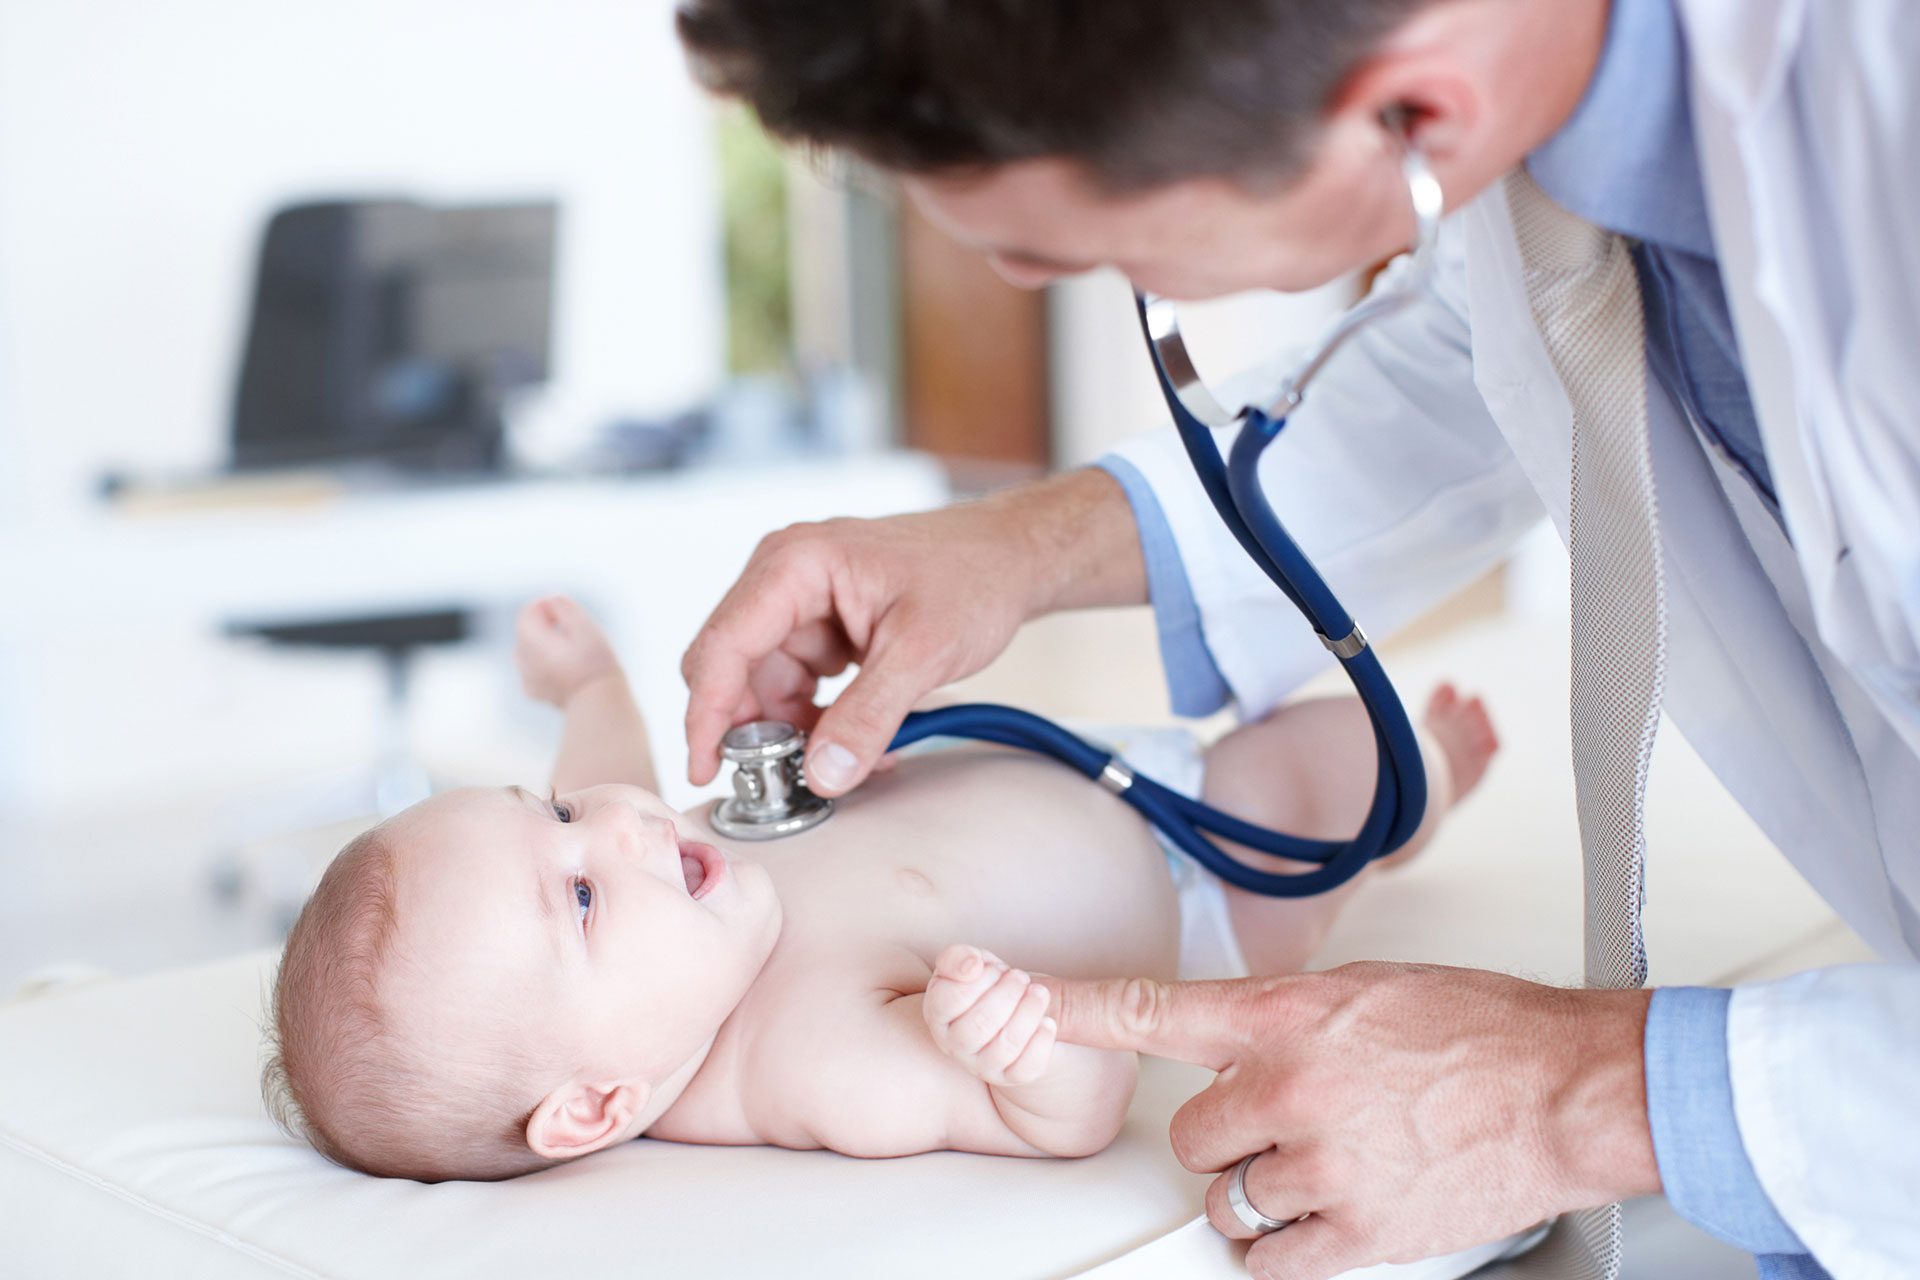 Primera visita médica con el recién nacido